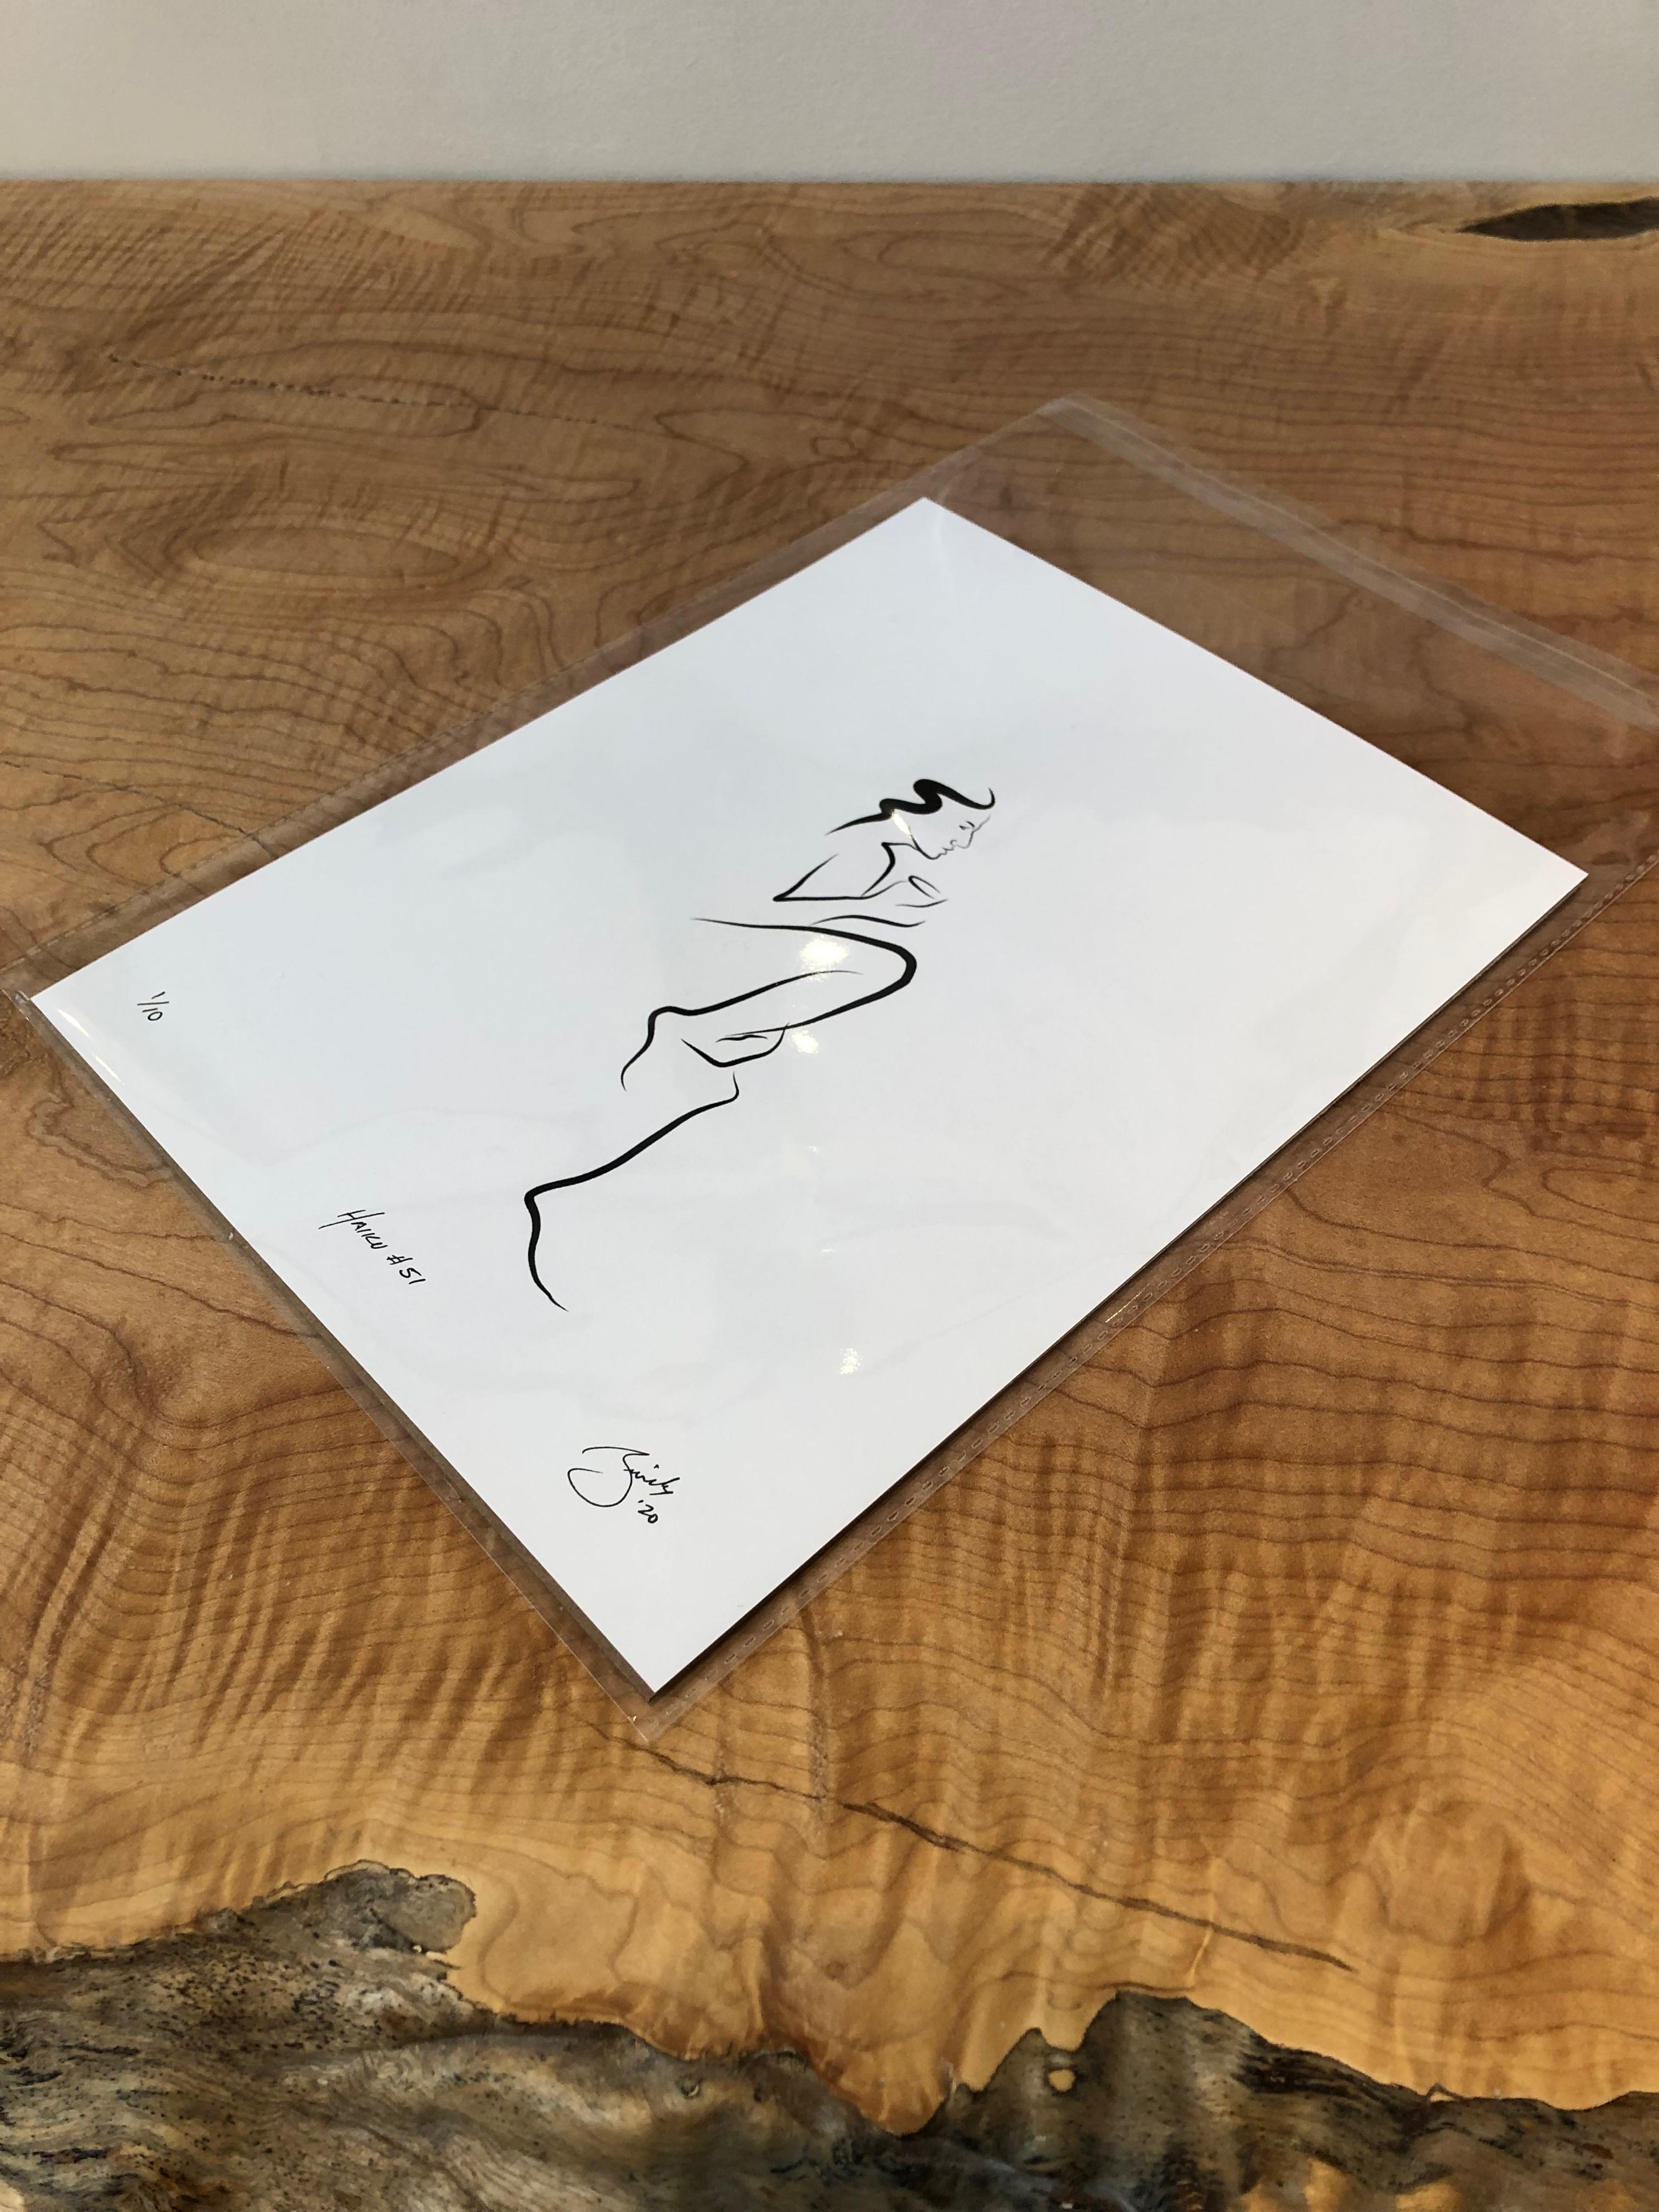 Haiku n°51, 1/50 - Dessin numérique représentant une femme nue assise sur une table basse - Print de Michael Binkley